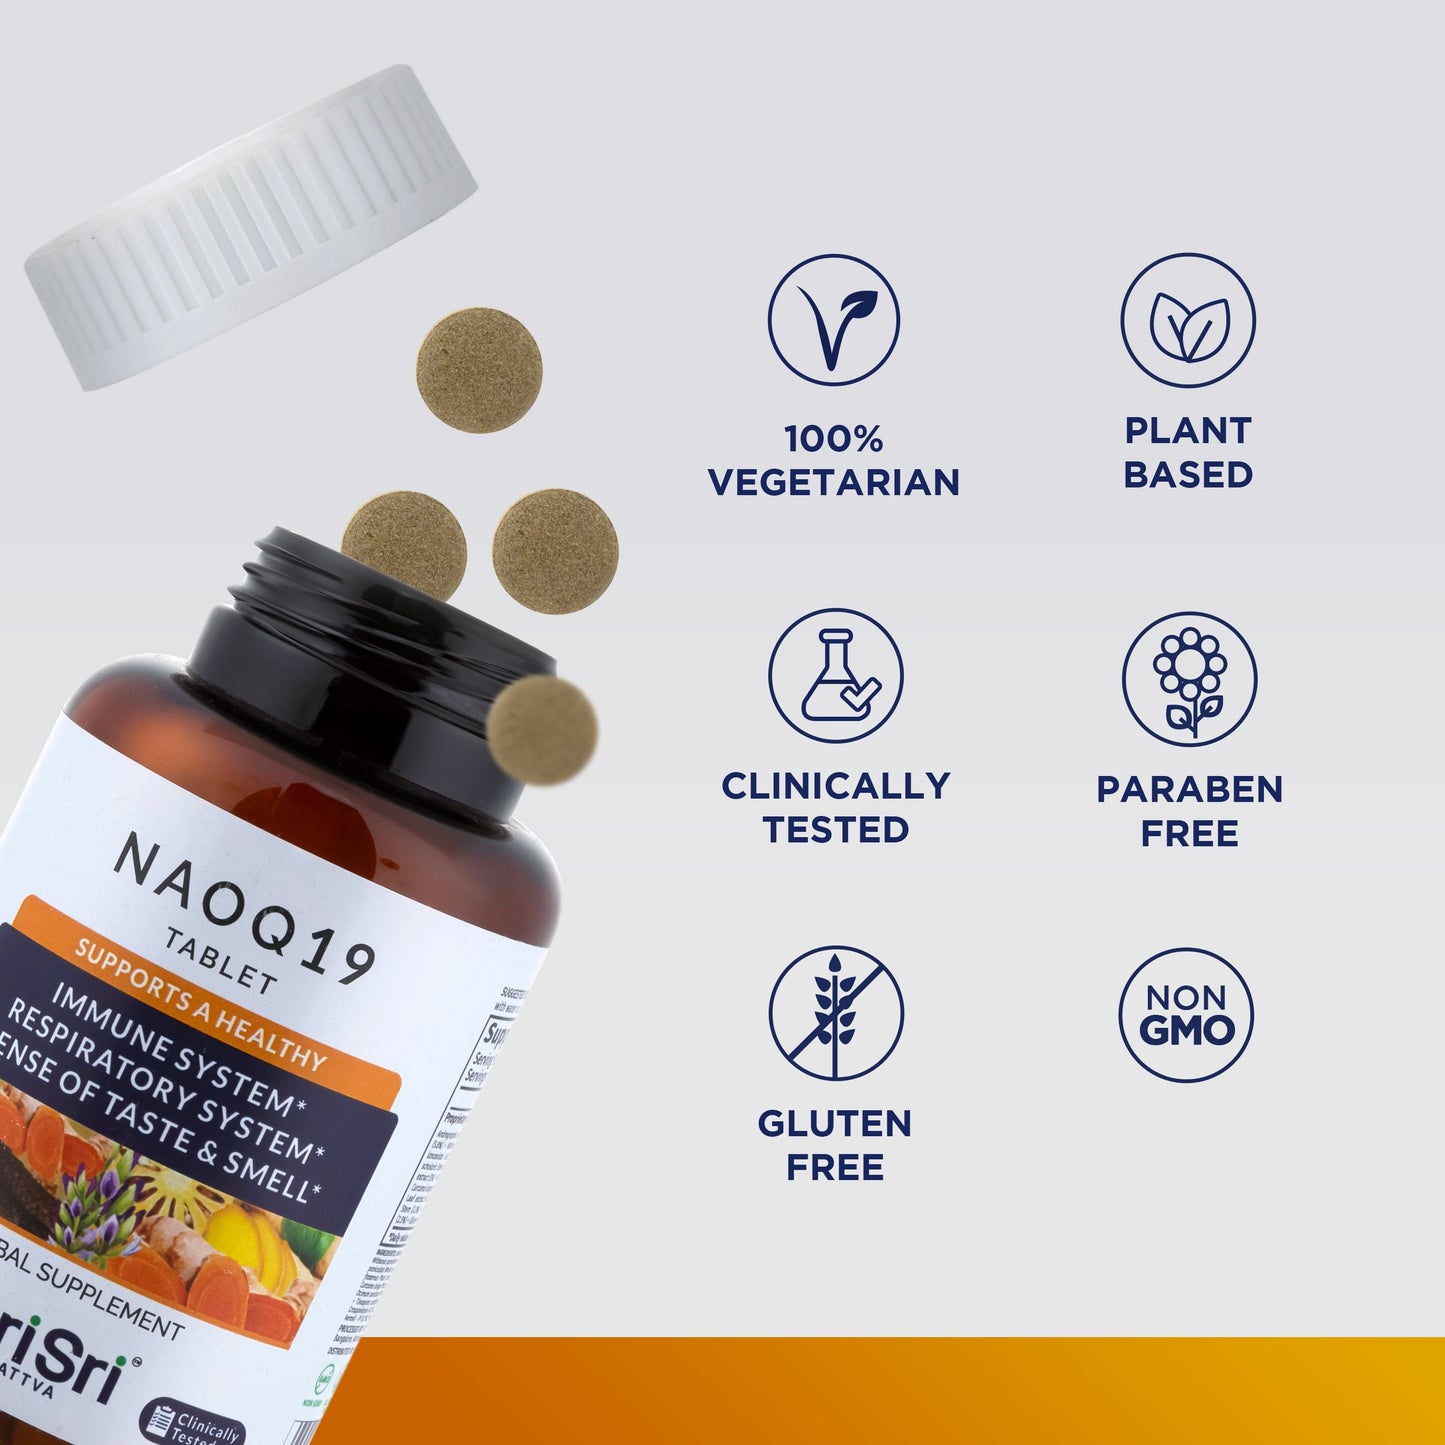 Sri Sri Tattva Herbs NAOQ19 - Immunity Booster | 90 Tabs | 500mg